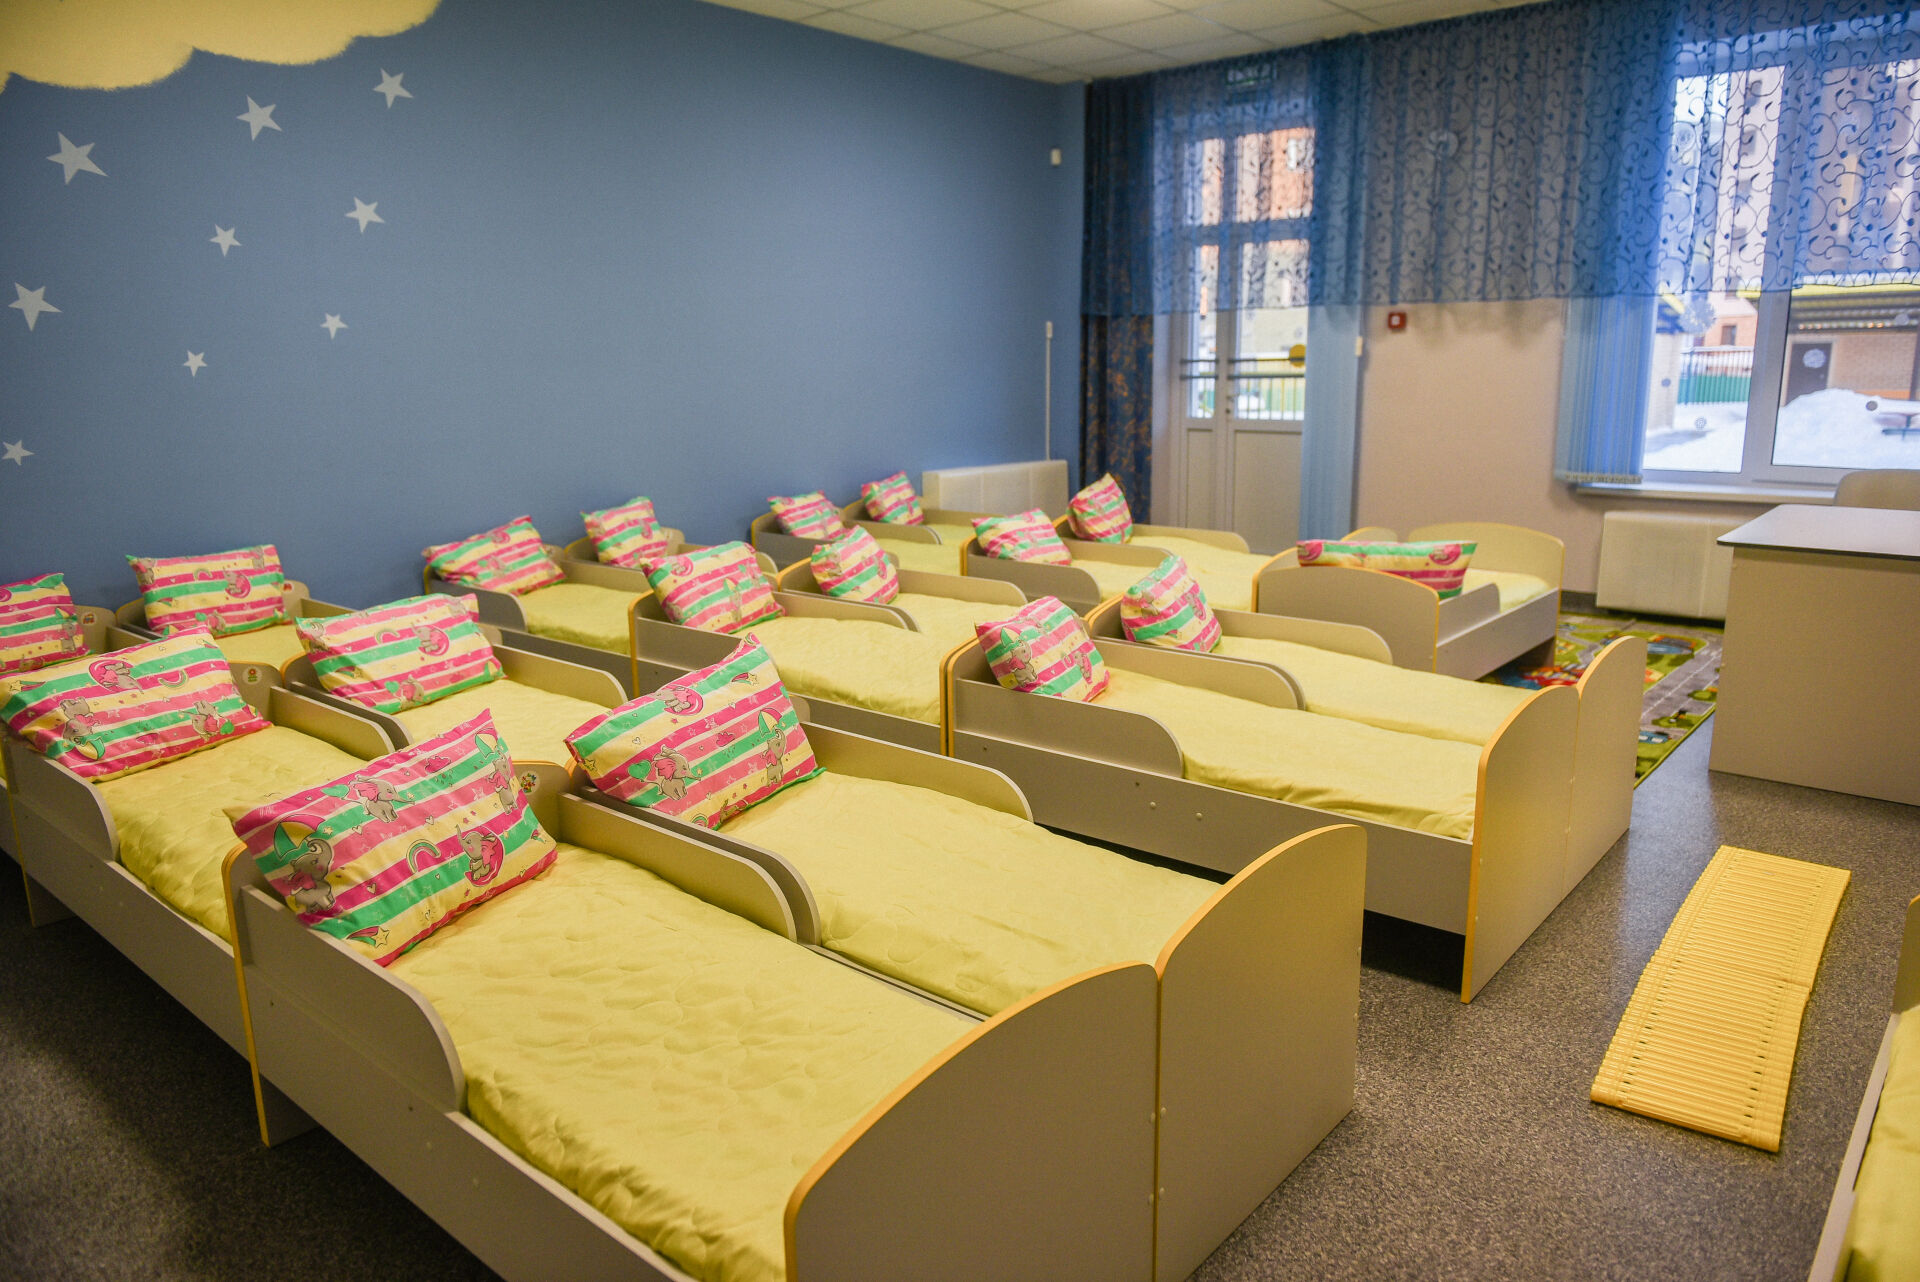 В Челнах открылся новый детский сад «Карусель»